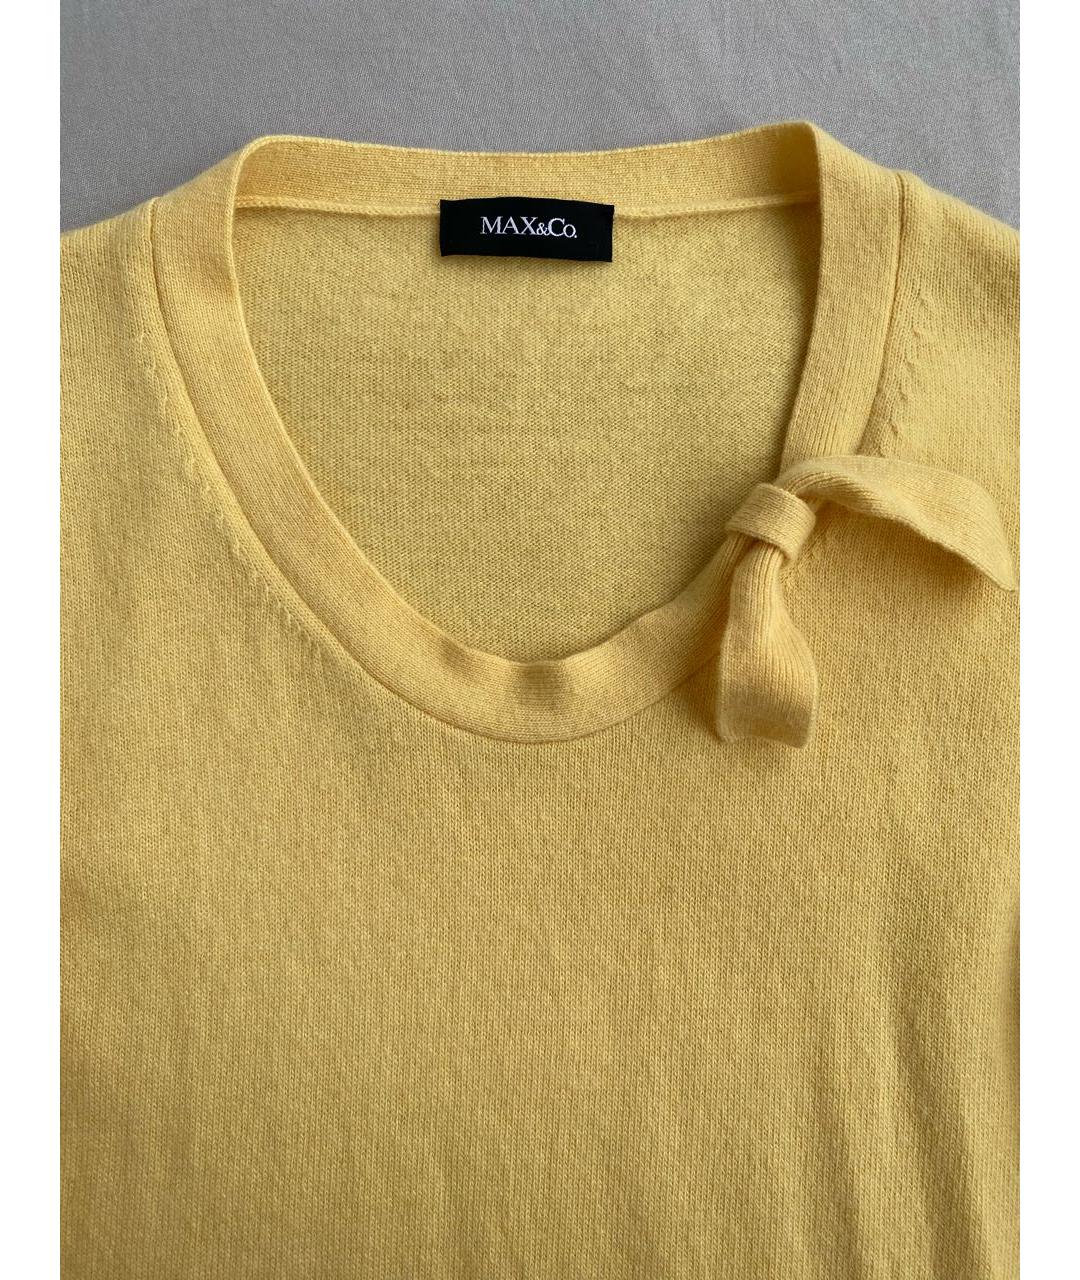 MAX&CO Желтый шерстяной джемпер / свитер, фото 3